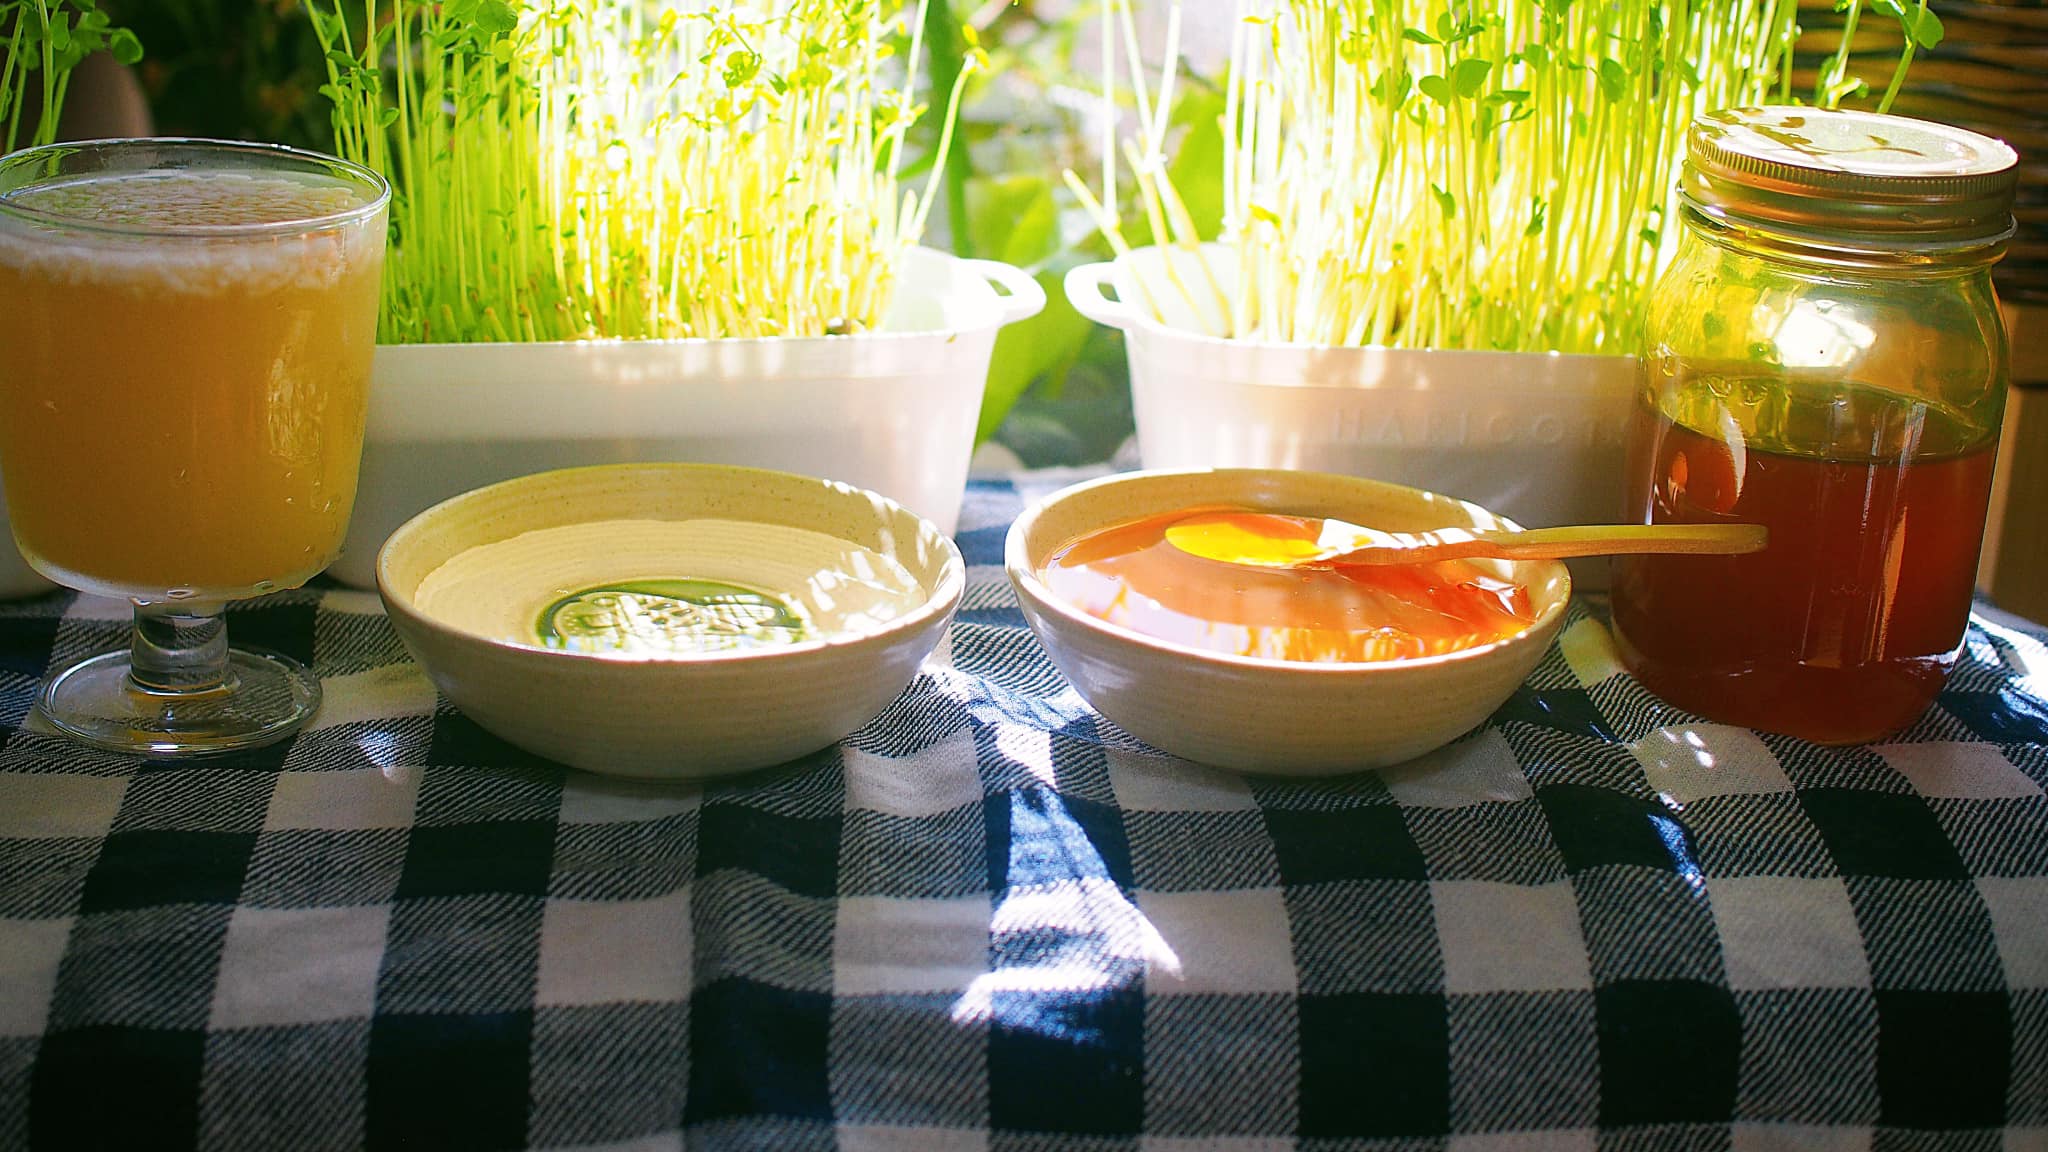 Siro gạo và siro ngô, hai gia vị ngọt ngào trong ẩm thực Hàn Quốc